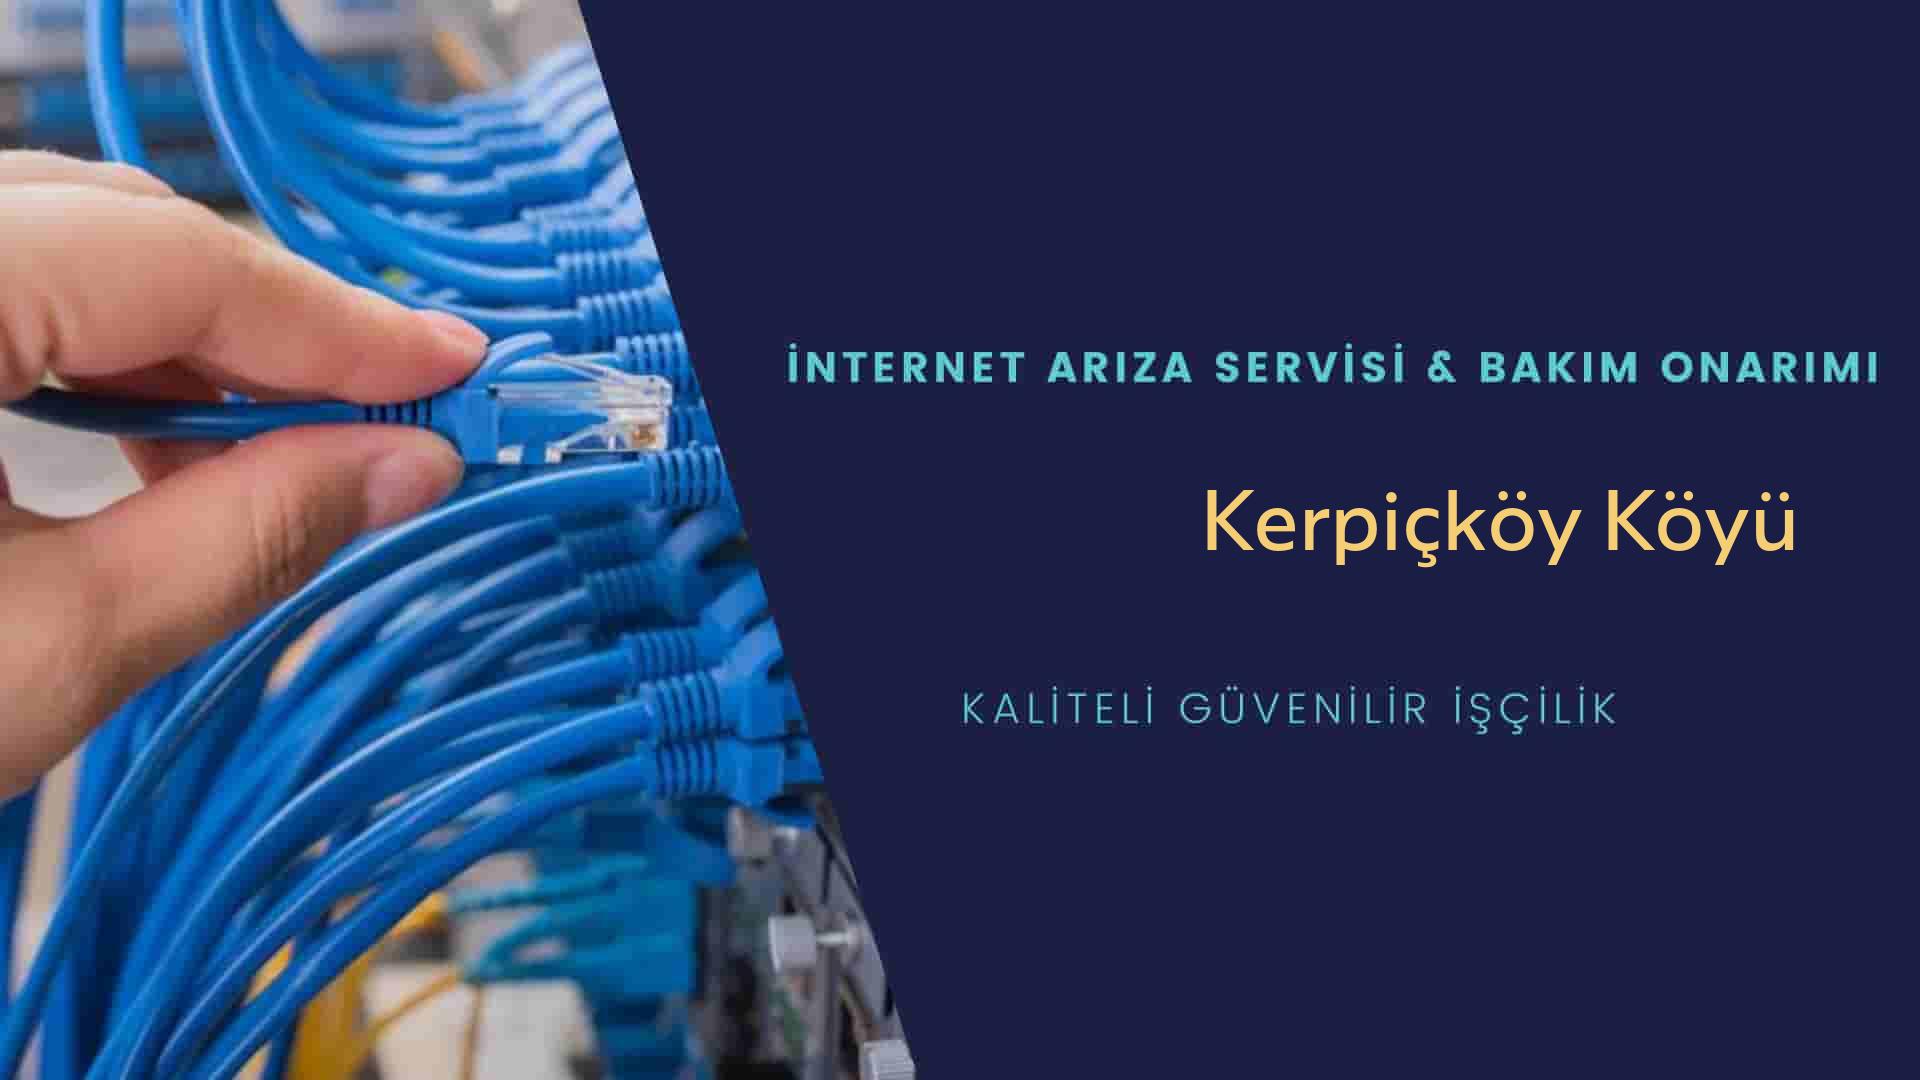 Kerpiçköy Köyü internet kablosu çekimi yapan yerler veya elektrikçiler mi? arıyorsunuz doğru yerdesiniz o zaman sizlere 7/24 yardımcı olacak profesyonel ustalarımız bir telefon kadar yakındır size.